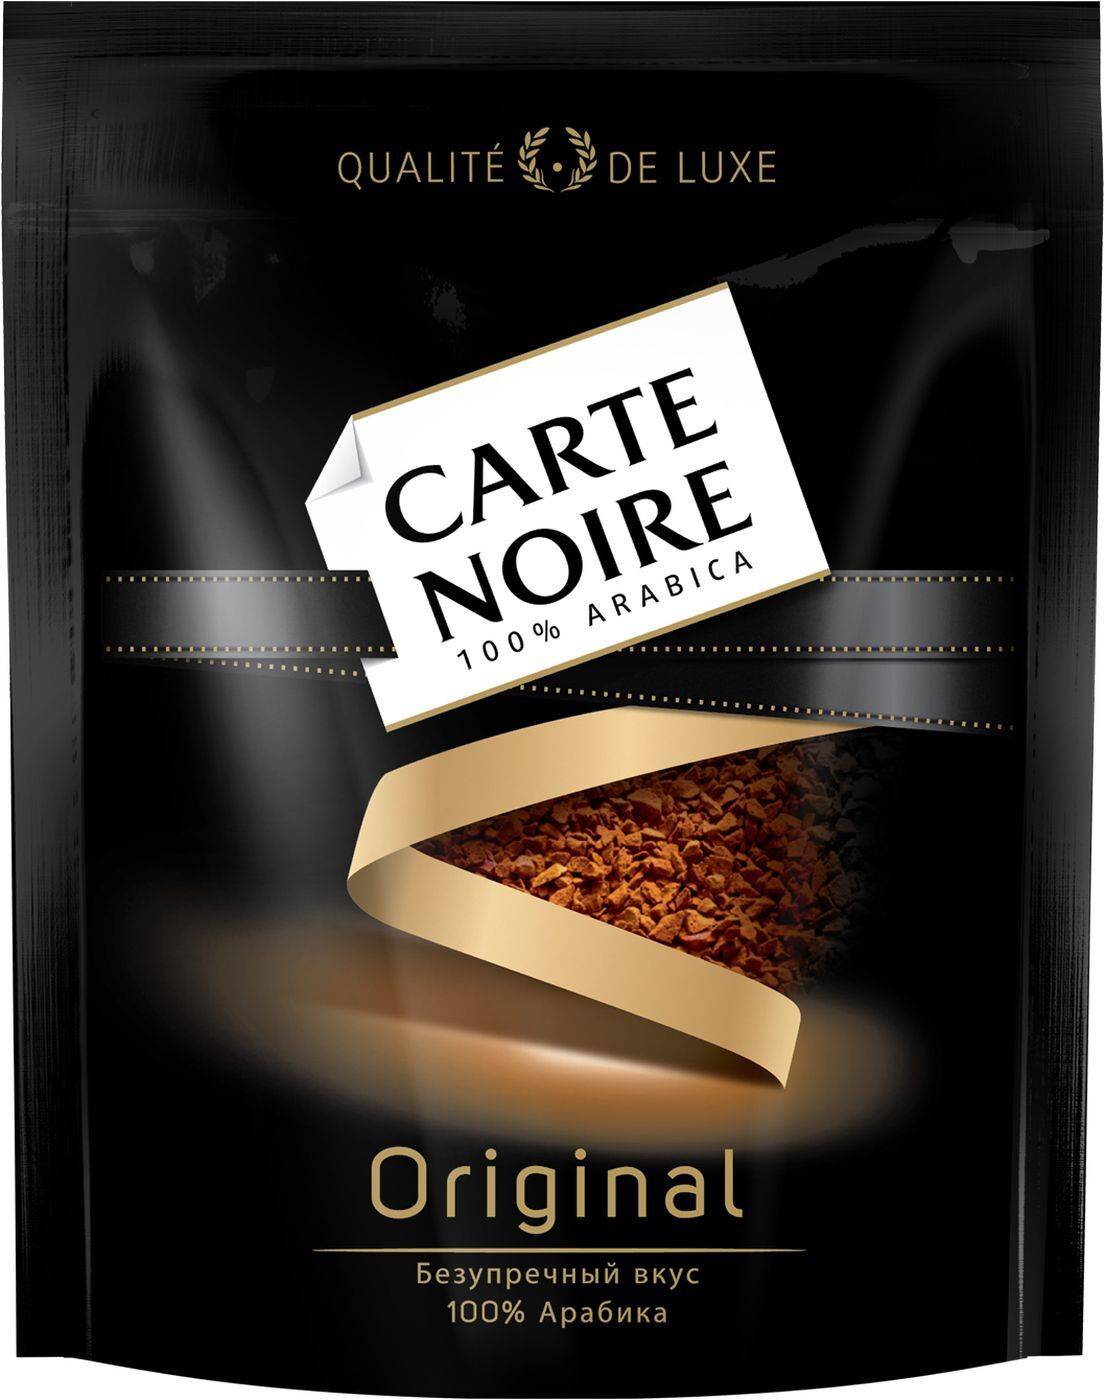 Кофе carte noire (карт нуар) - бренд, цены, ассортимент, отзывы